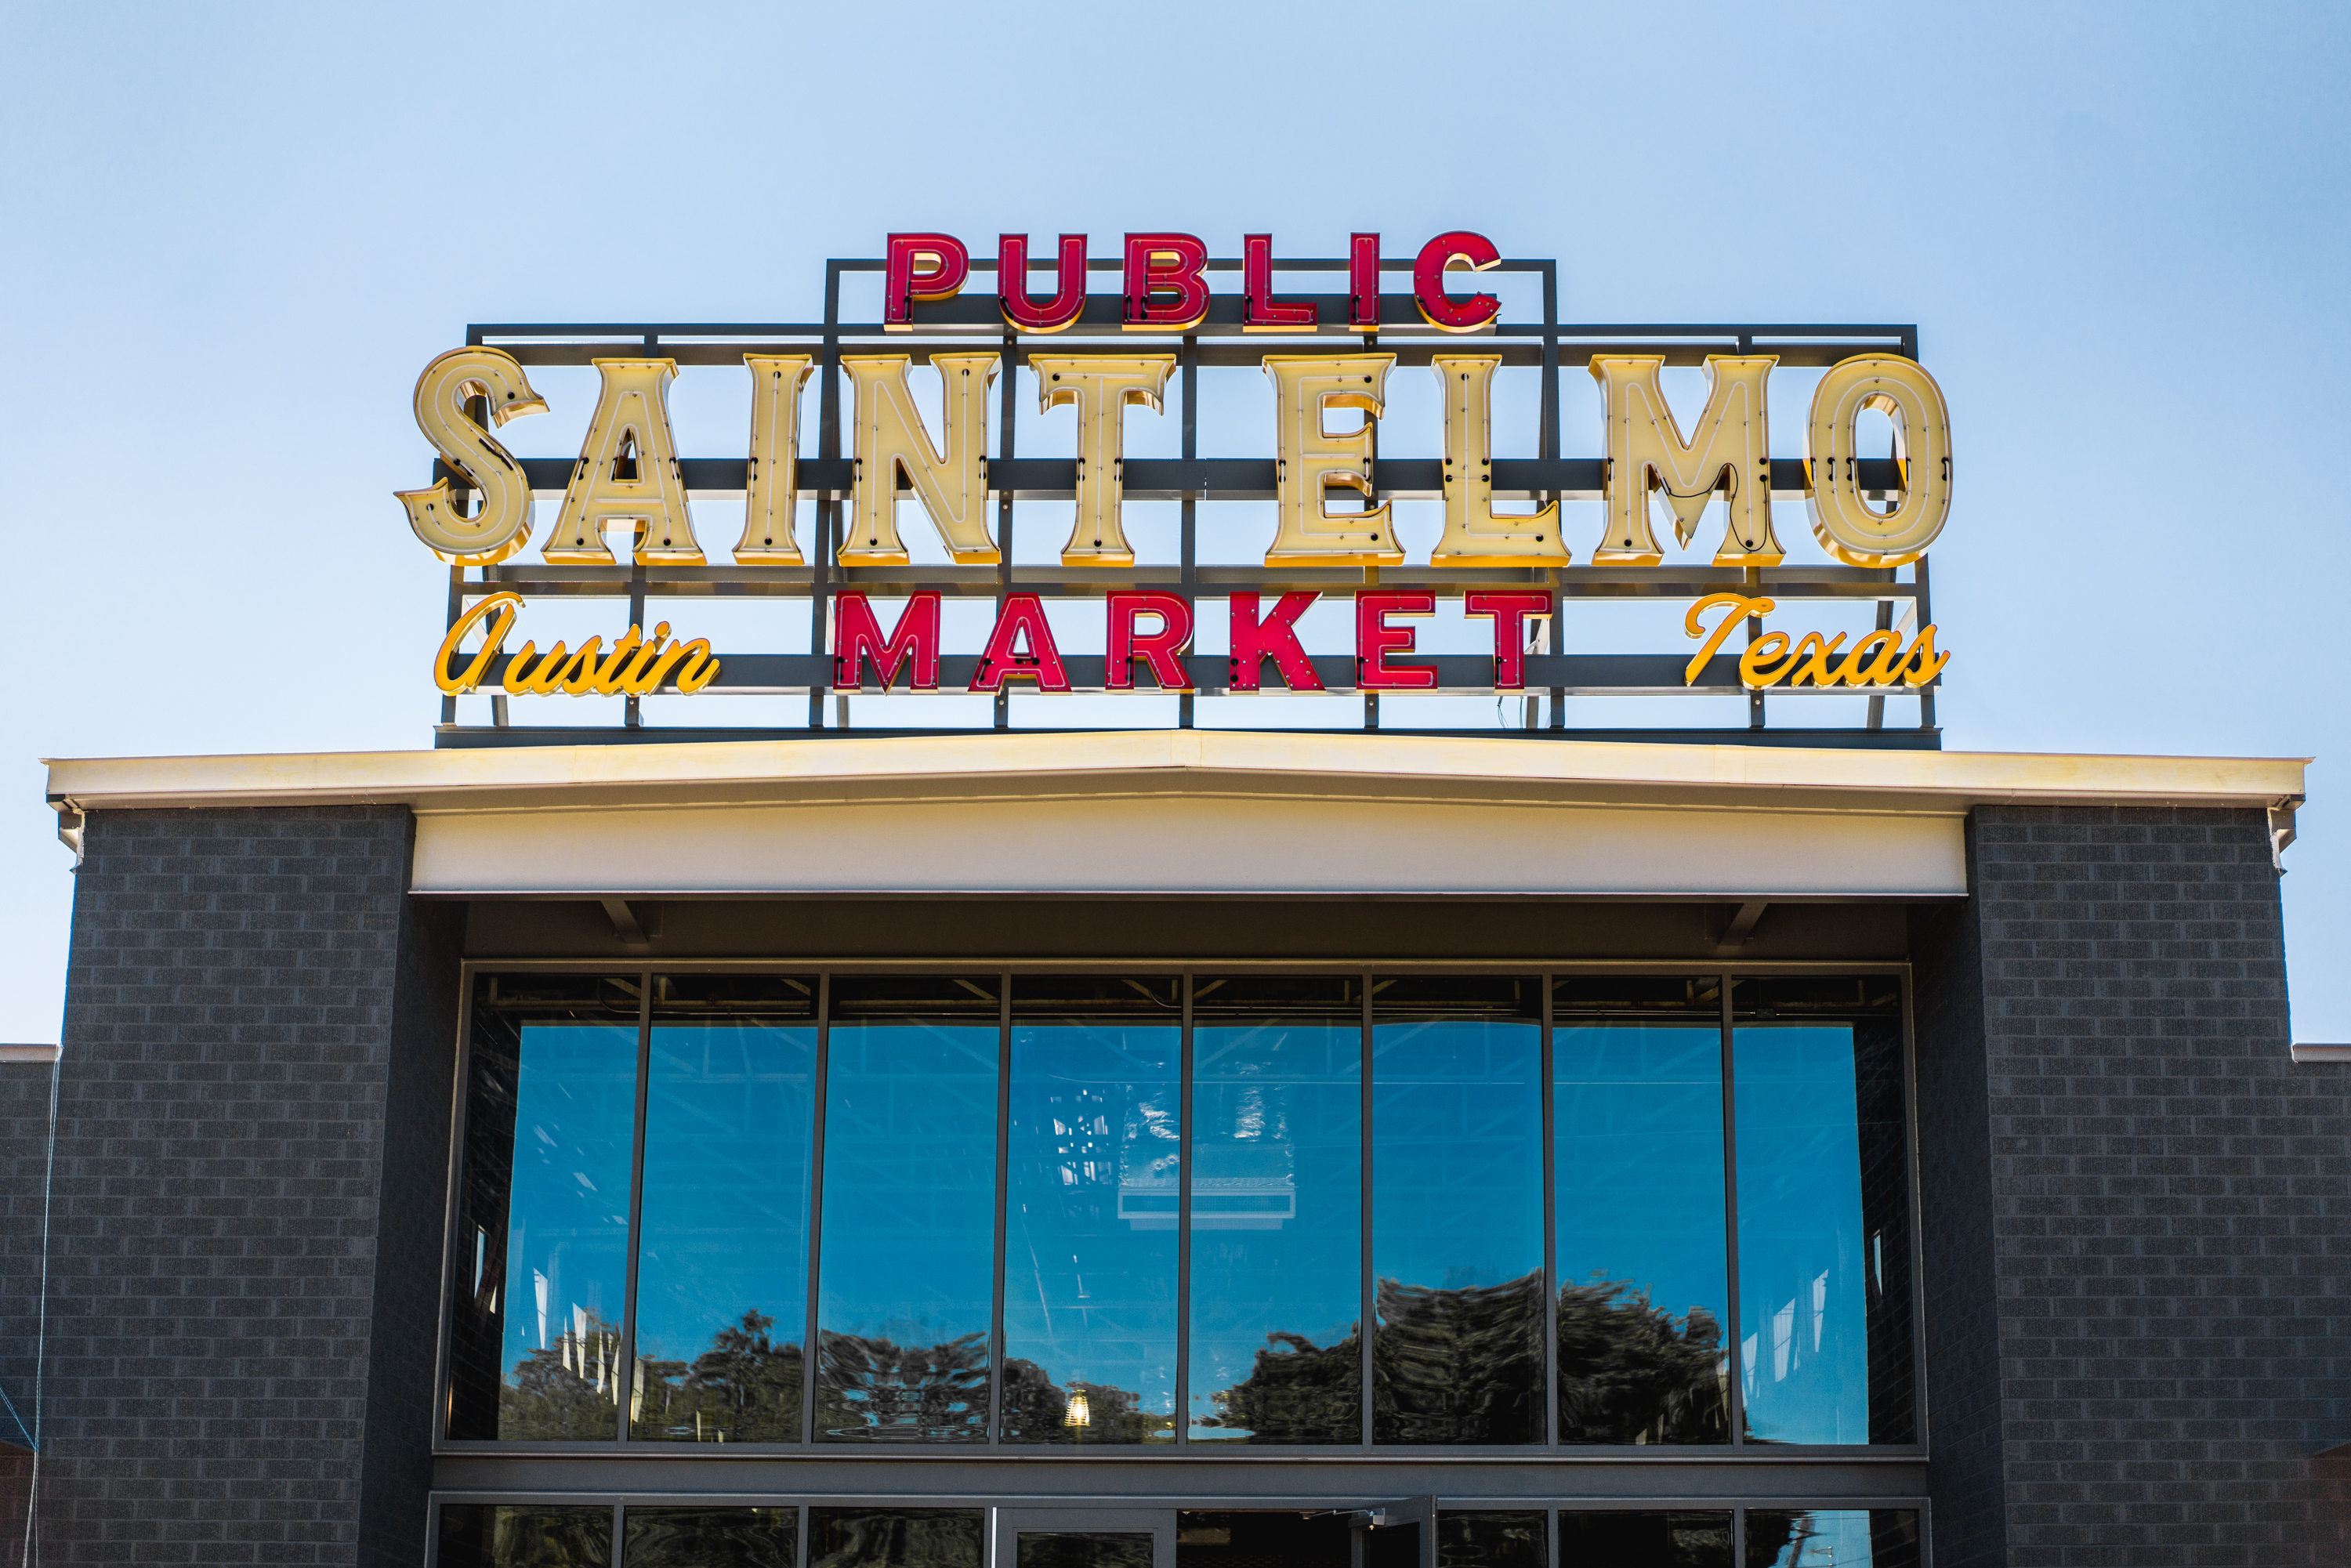 A sign that reads “Public Saint Elmo Market” on a building.